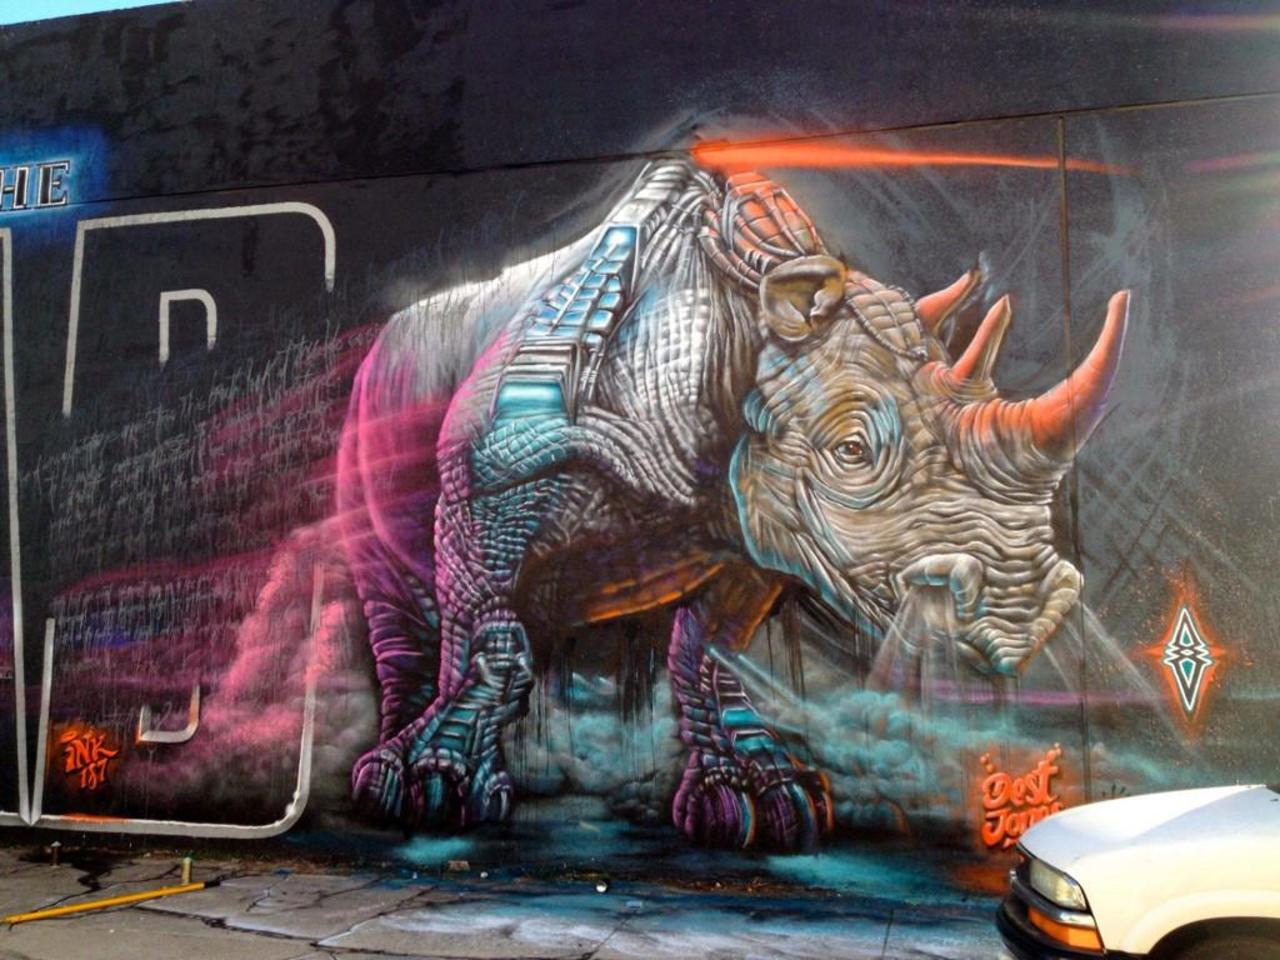 “@GoogleStreetArt: Incredible Street Art by artist Dest 

#art #mural #graffiti #streetart http://t.co/QAb4IzSJHF”